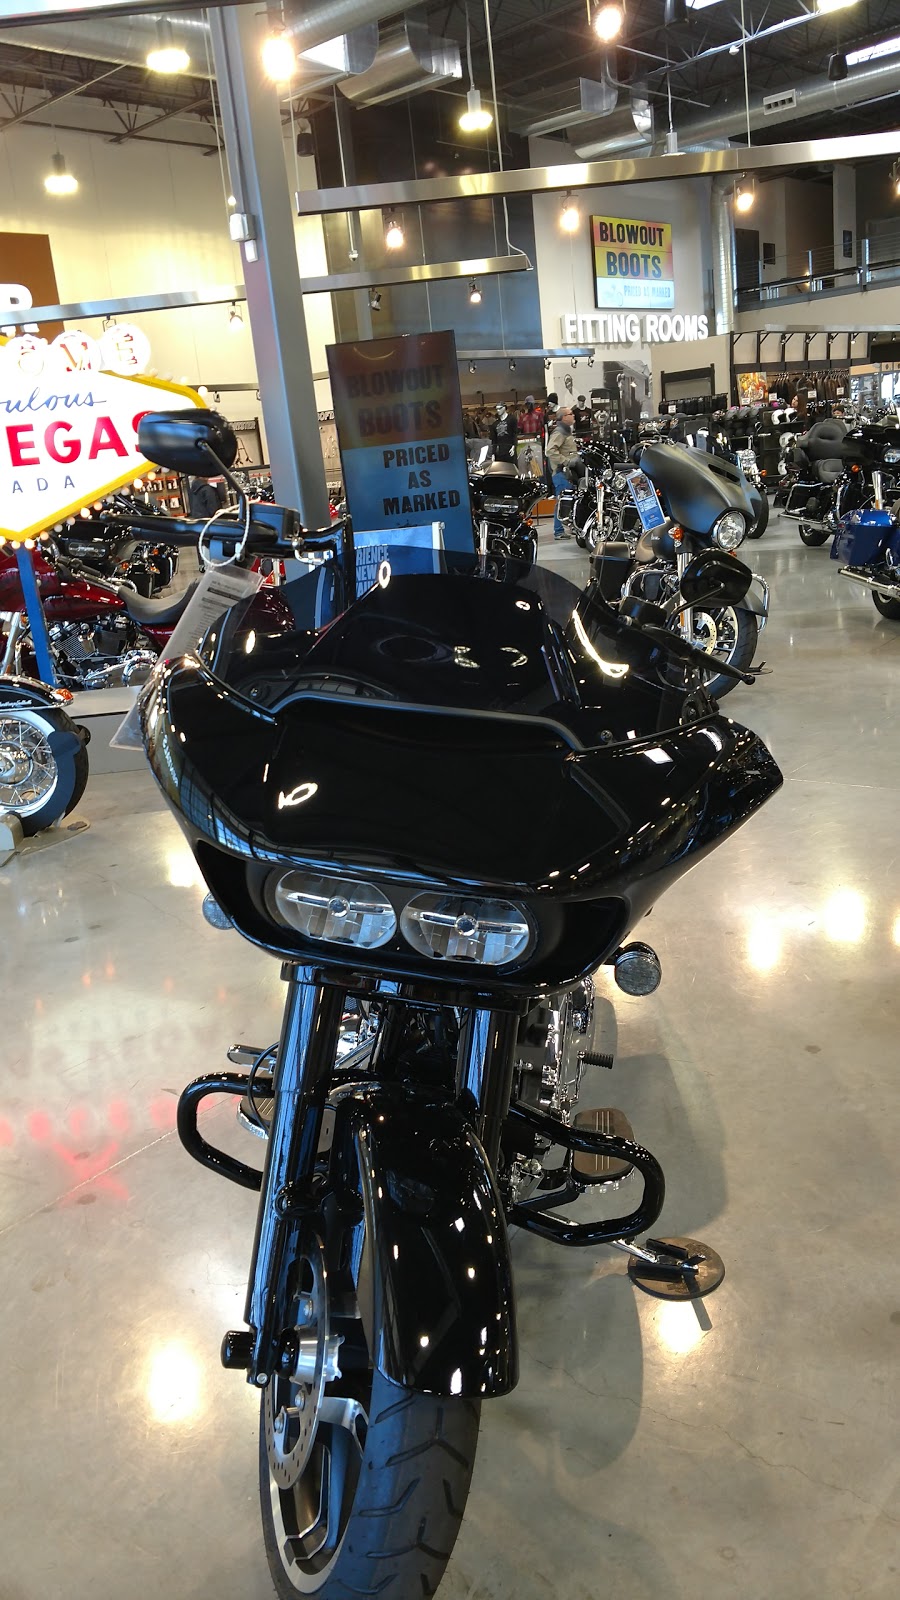 Las Vegas Harley-Davidson | 5191 S Las Vegas Blvd, Las Vegas, NV 89119 | Phone: (702) 431-8500